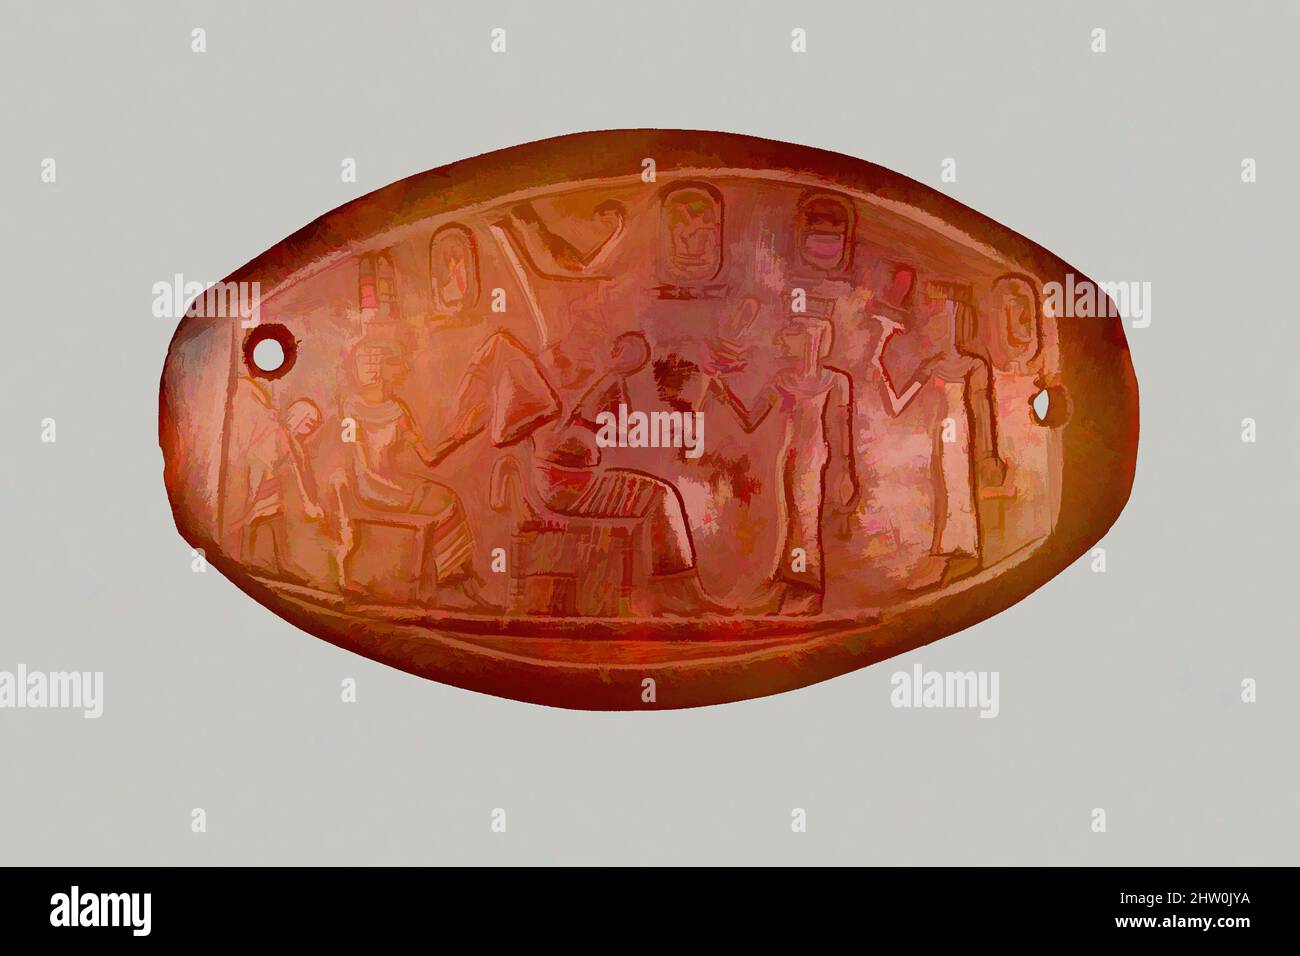 Art inspiré par la plaque sculptée d'Amenhotep III, Nouveau Royaume, dynastie 18, ca. 1390–1352 C.-B., d'Égypte, carnélien, h. 2,3 cm ( 7/8 po) ; w. 4,1 cm (1 5/8 po) ; th. 0,2 cm (1/16 po), deux princesses, chacune tenant un sistrum et un ankh, font face à l'Enthroned Amenhotep III et à la reine Tiye, qui, œuvres classiques modernisées par Artotop avec une touche de modernité. Formes, couleur et valeur, impact visuel accrocheur sur l'art émotions par la liberté d'œuvres d'art d'une manière contemporaine. Un message intemporel qui cherche une nouvelle direction créative. Artistes qui se tournent vers le support numérique et créent le NFT Artotop Banque D'Images